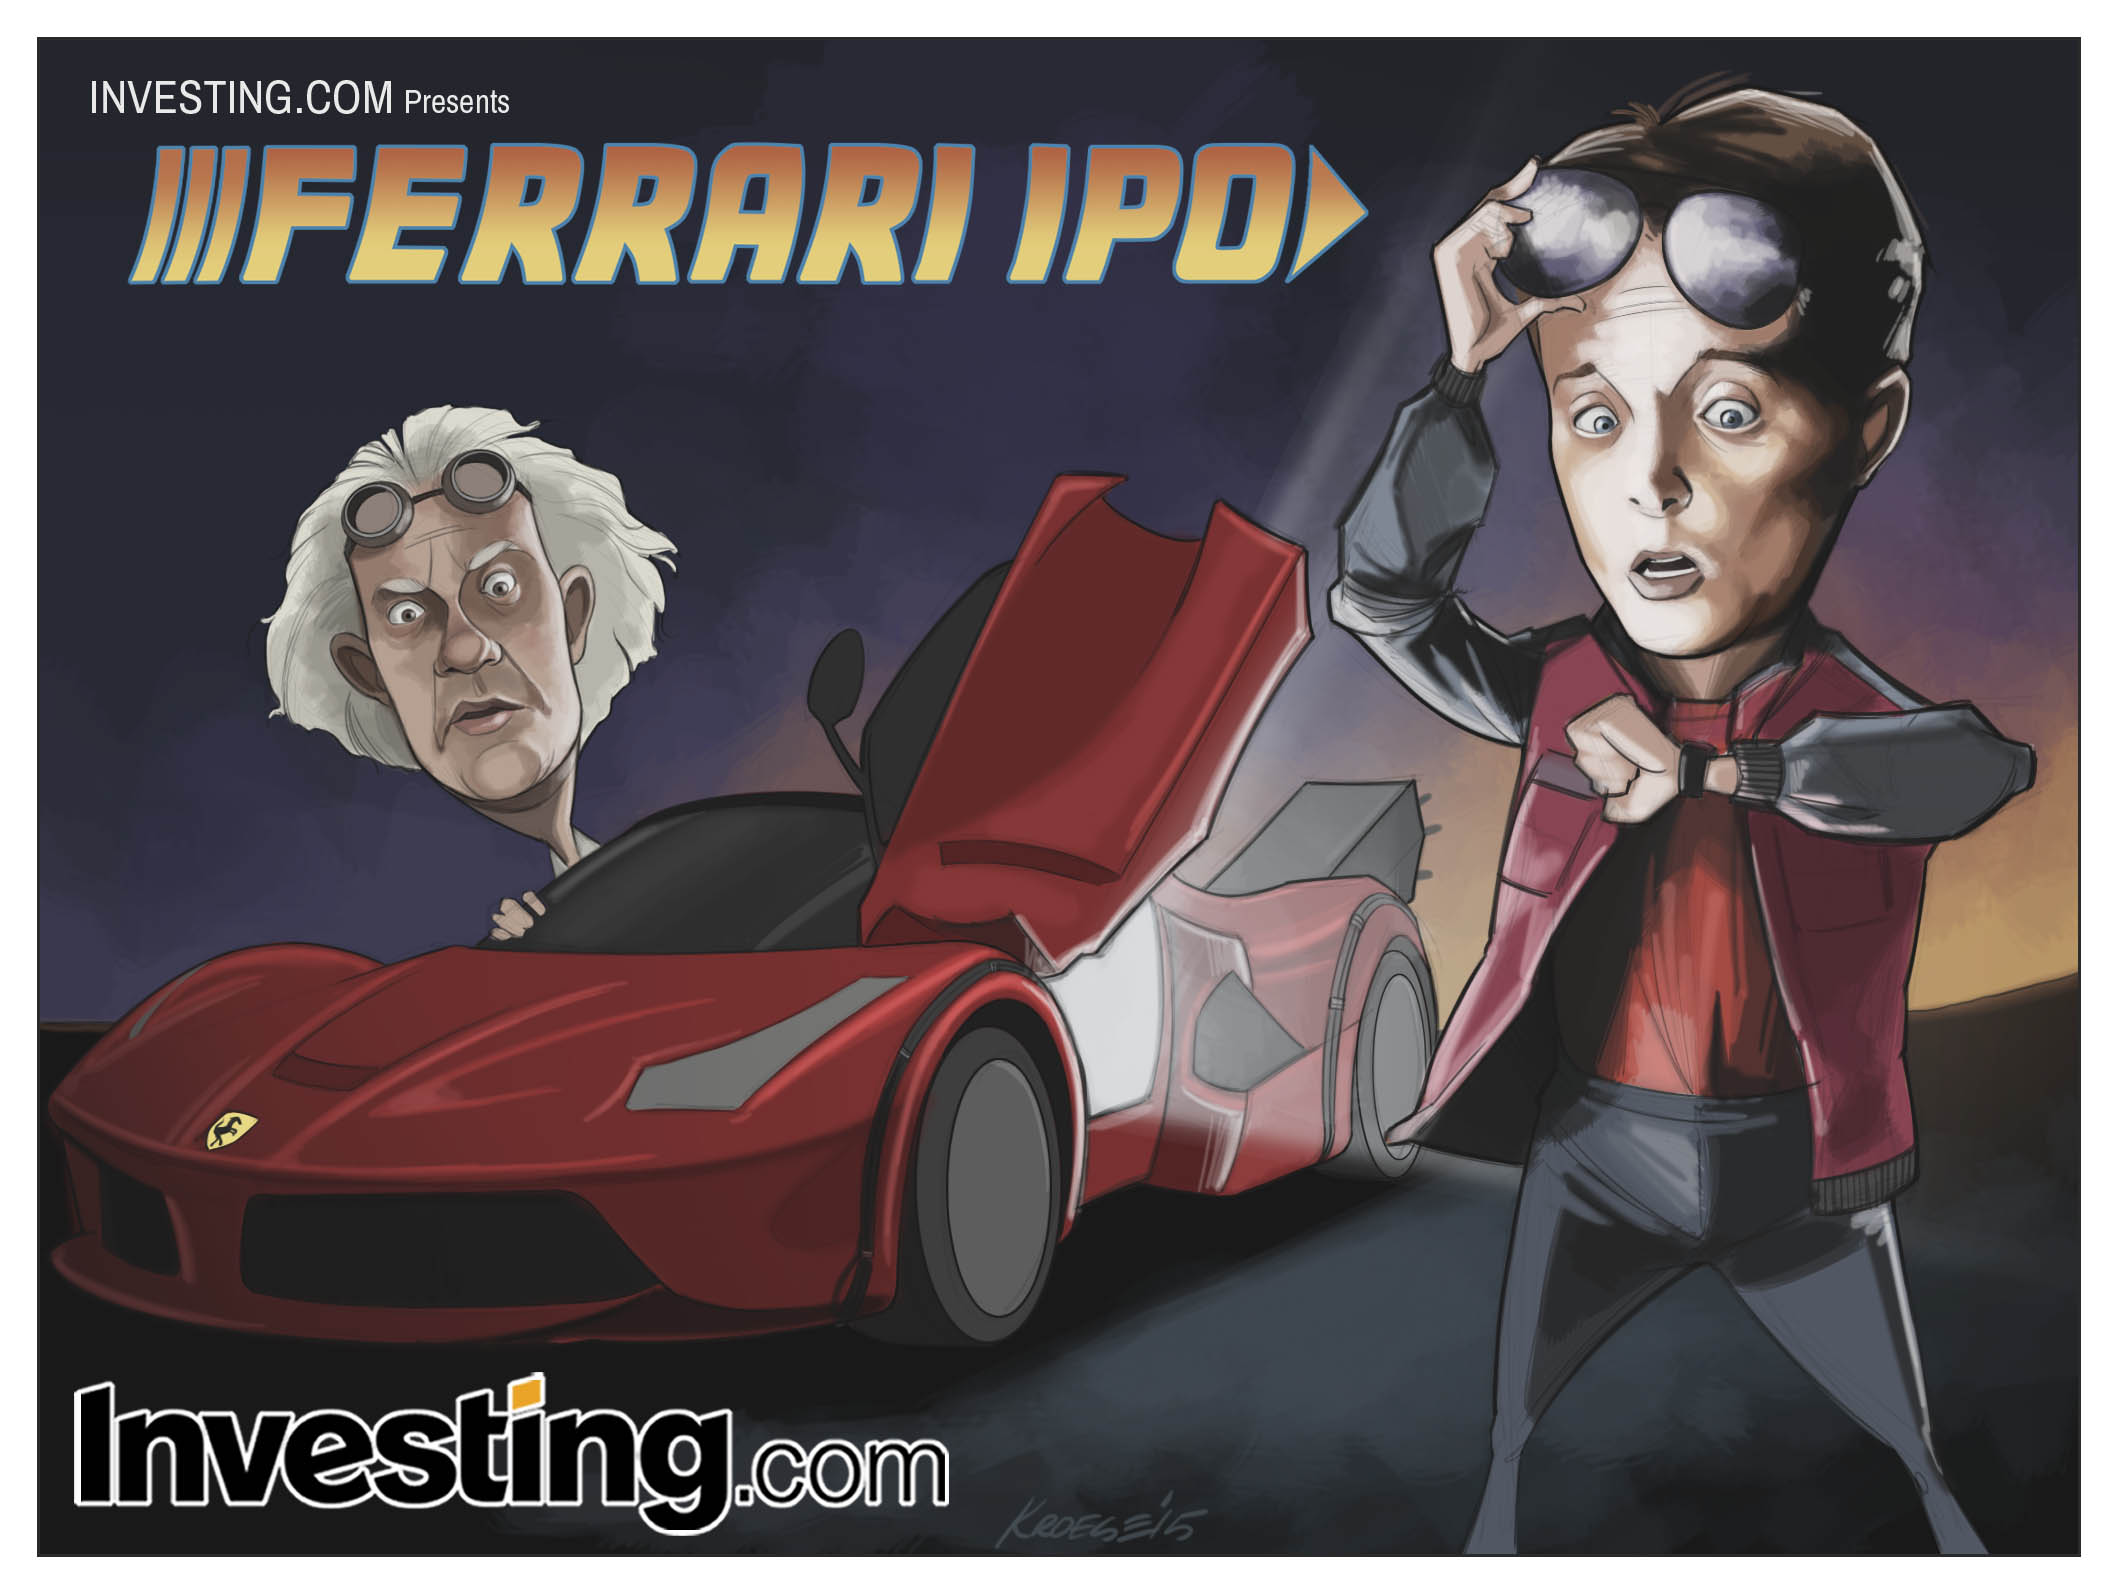 O IPO da Ferrari do futuro